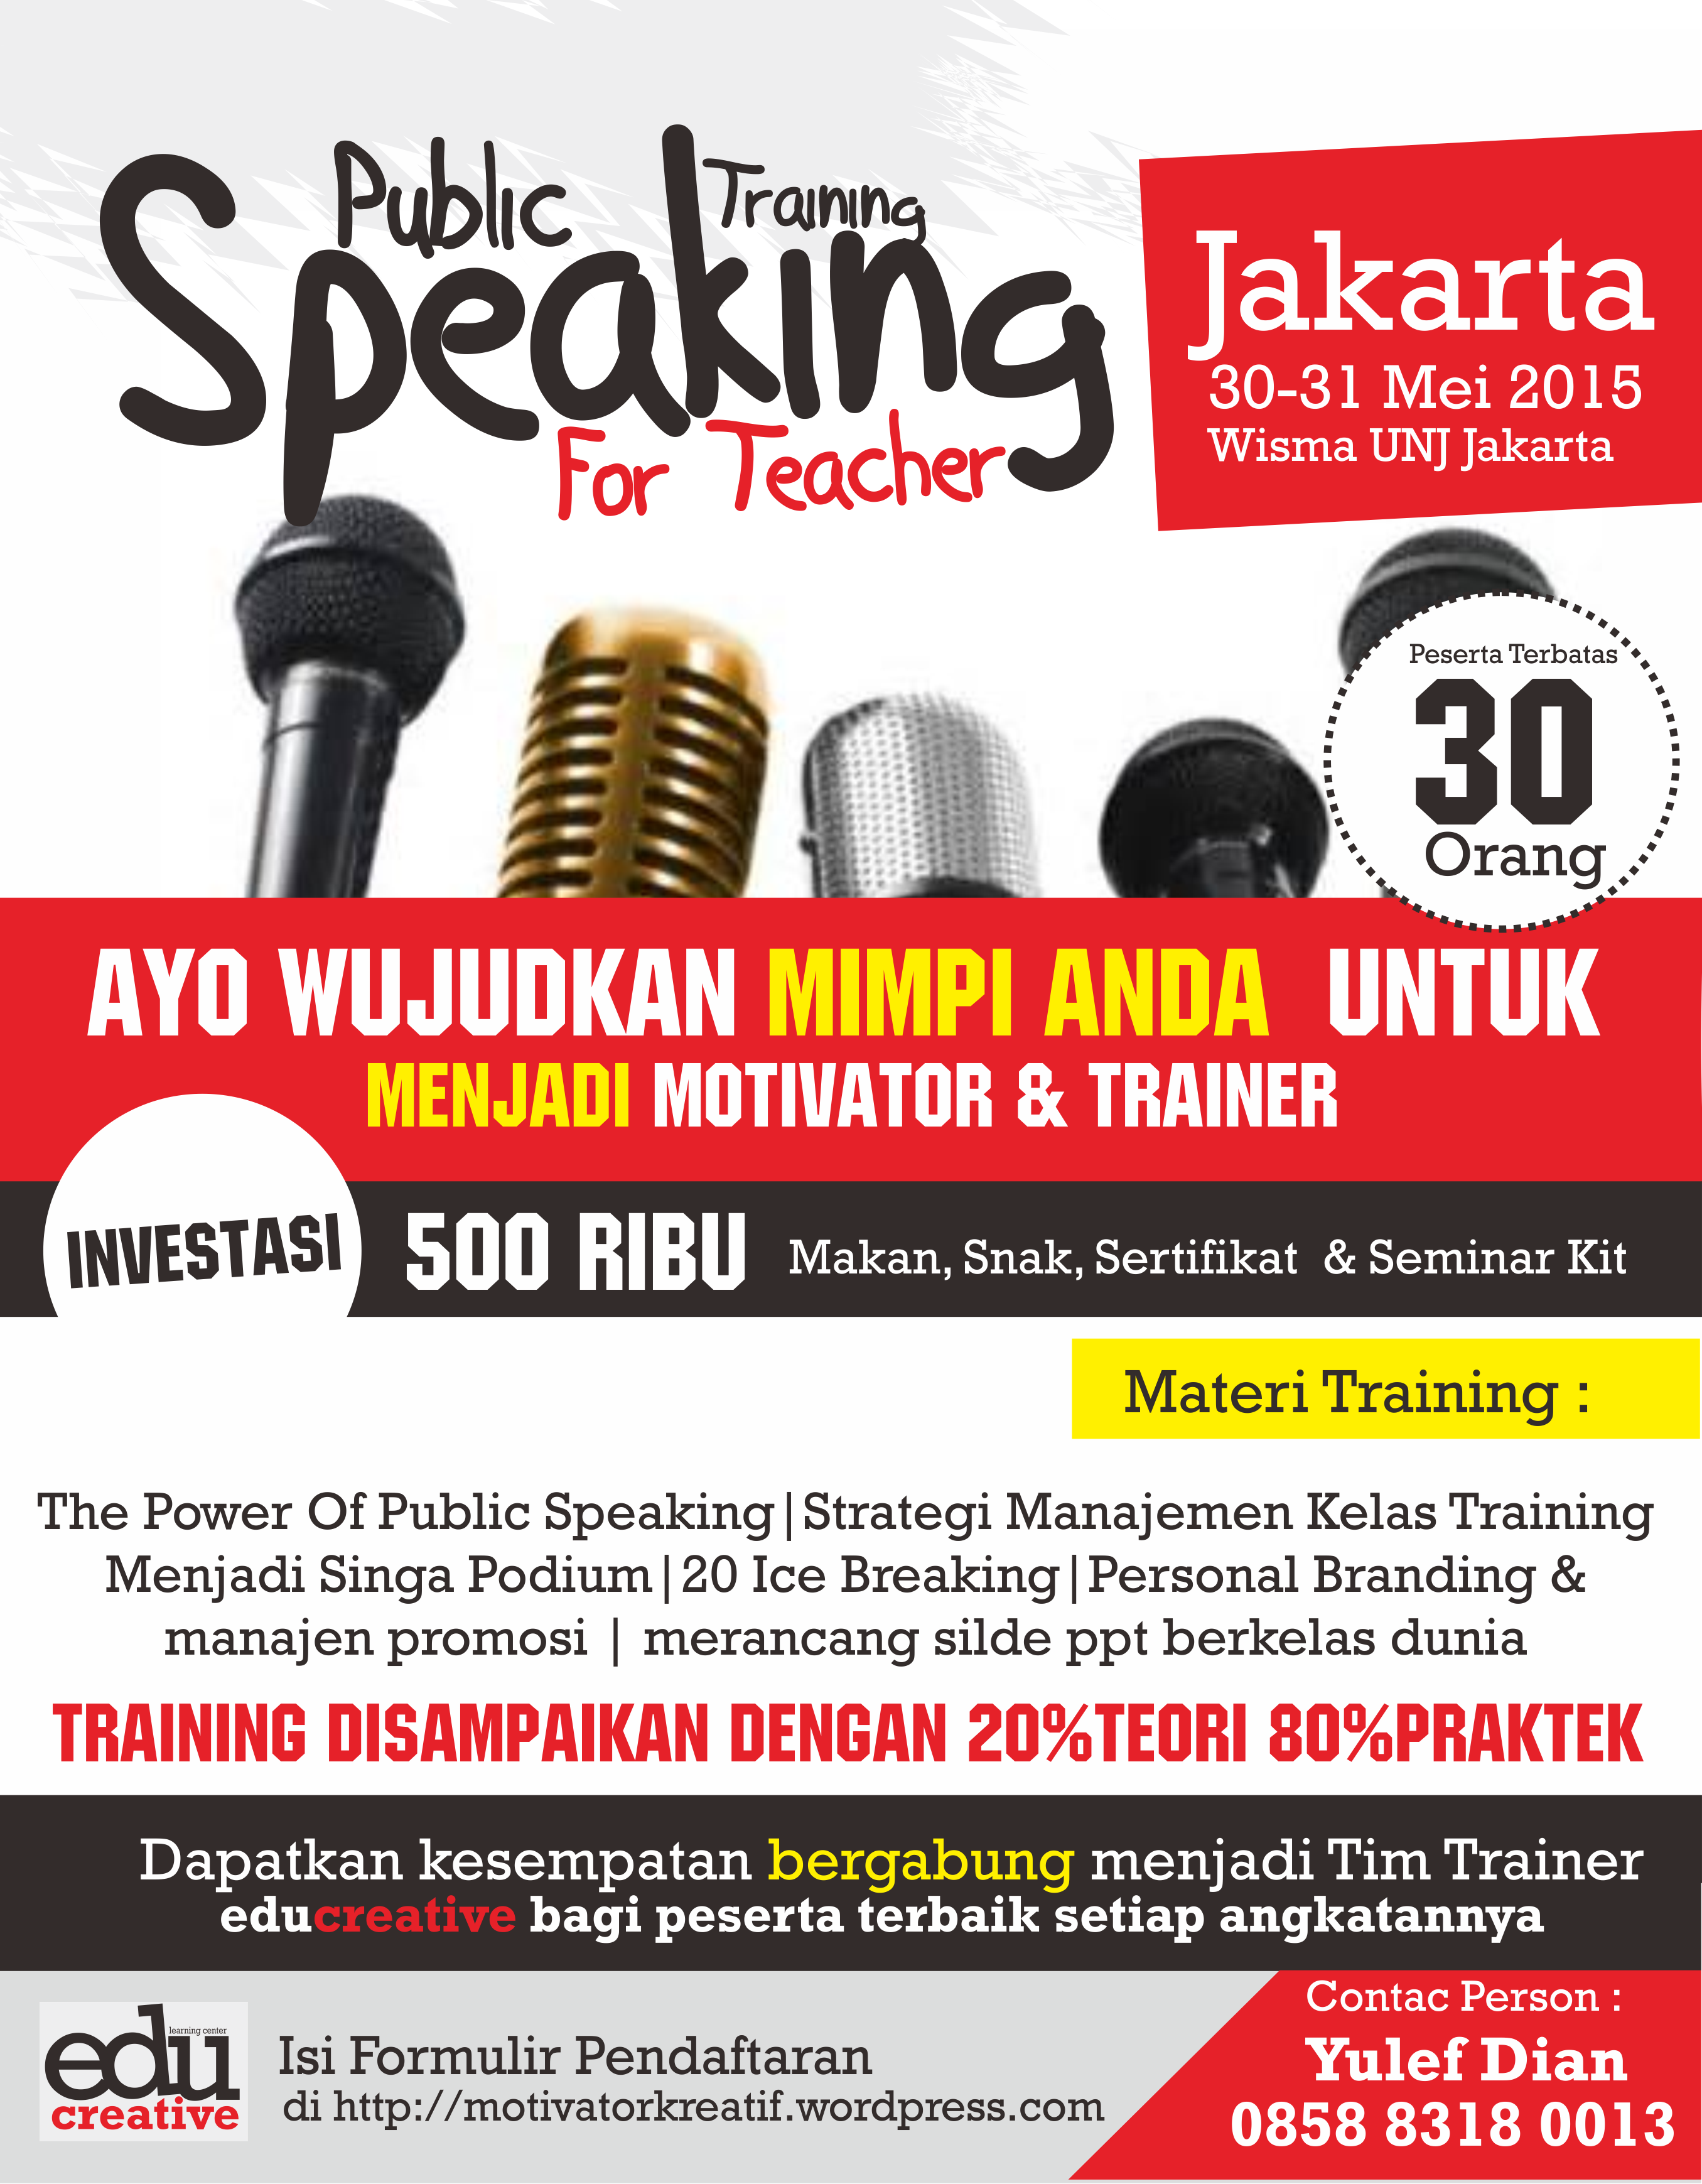 Yuk Ikut Acara Public Speaking For Teacher Jakarta 